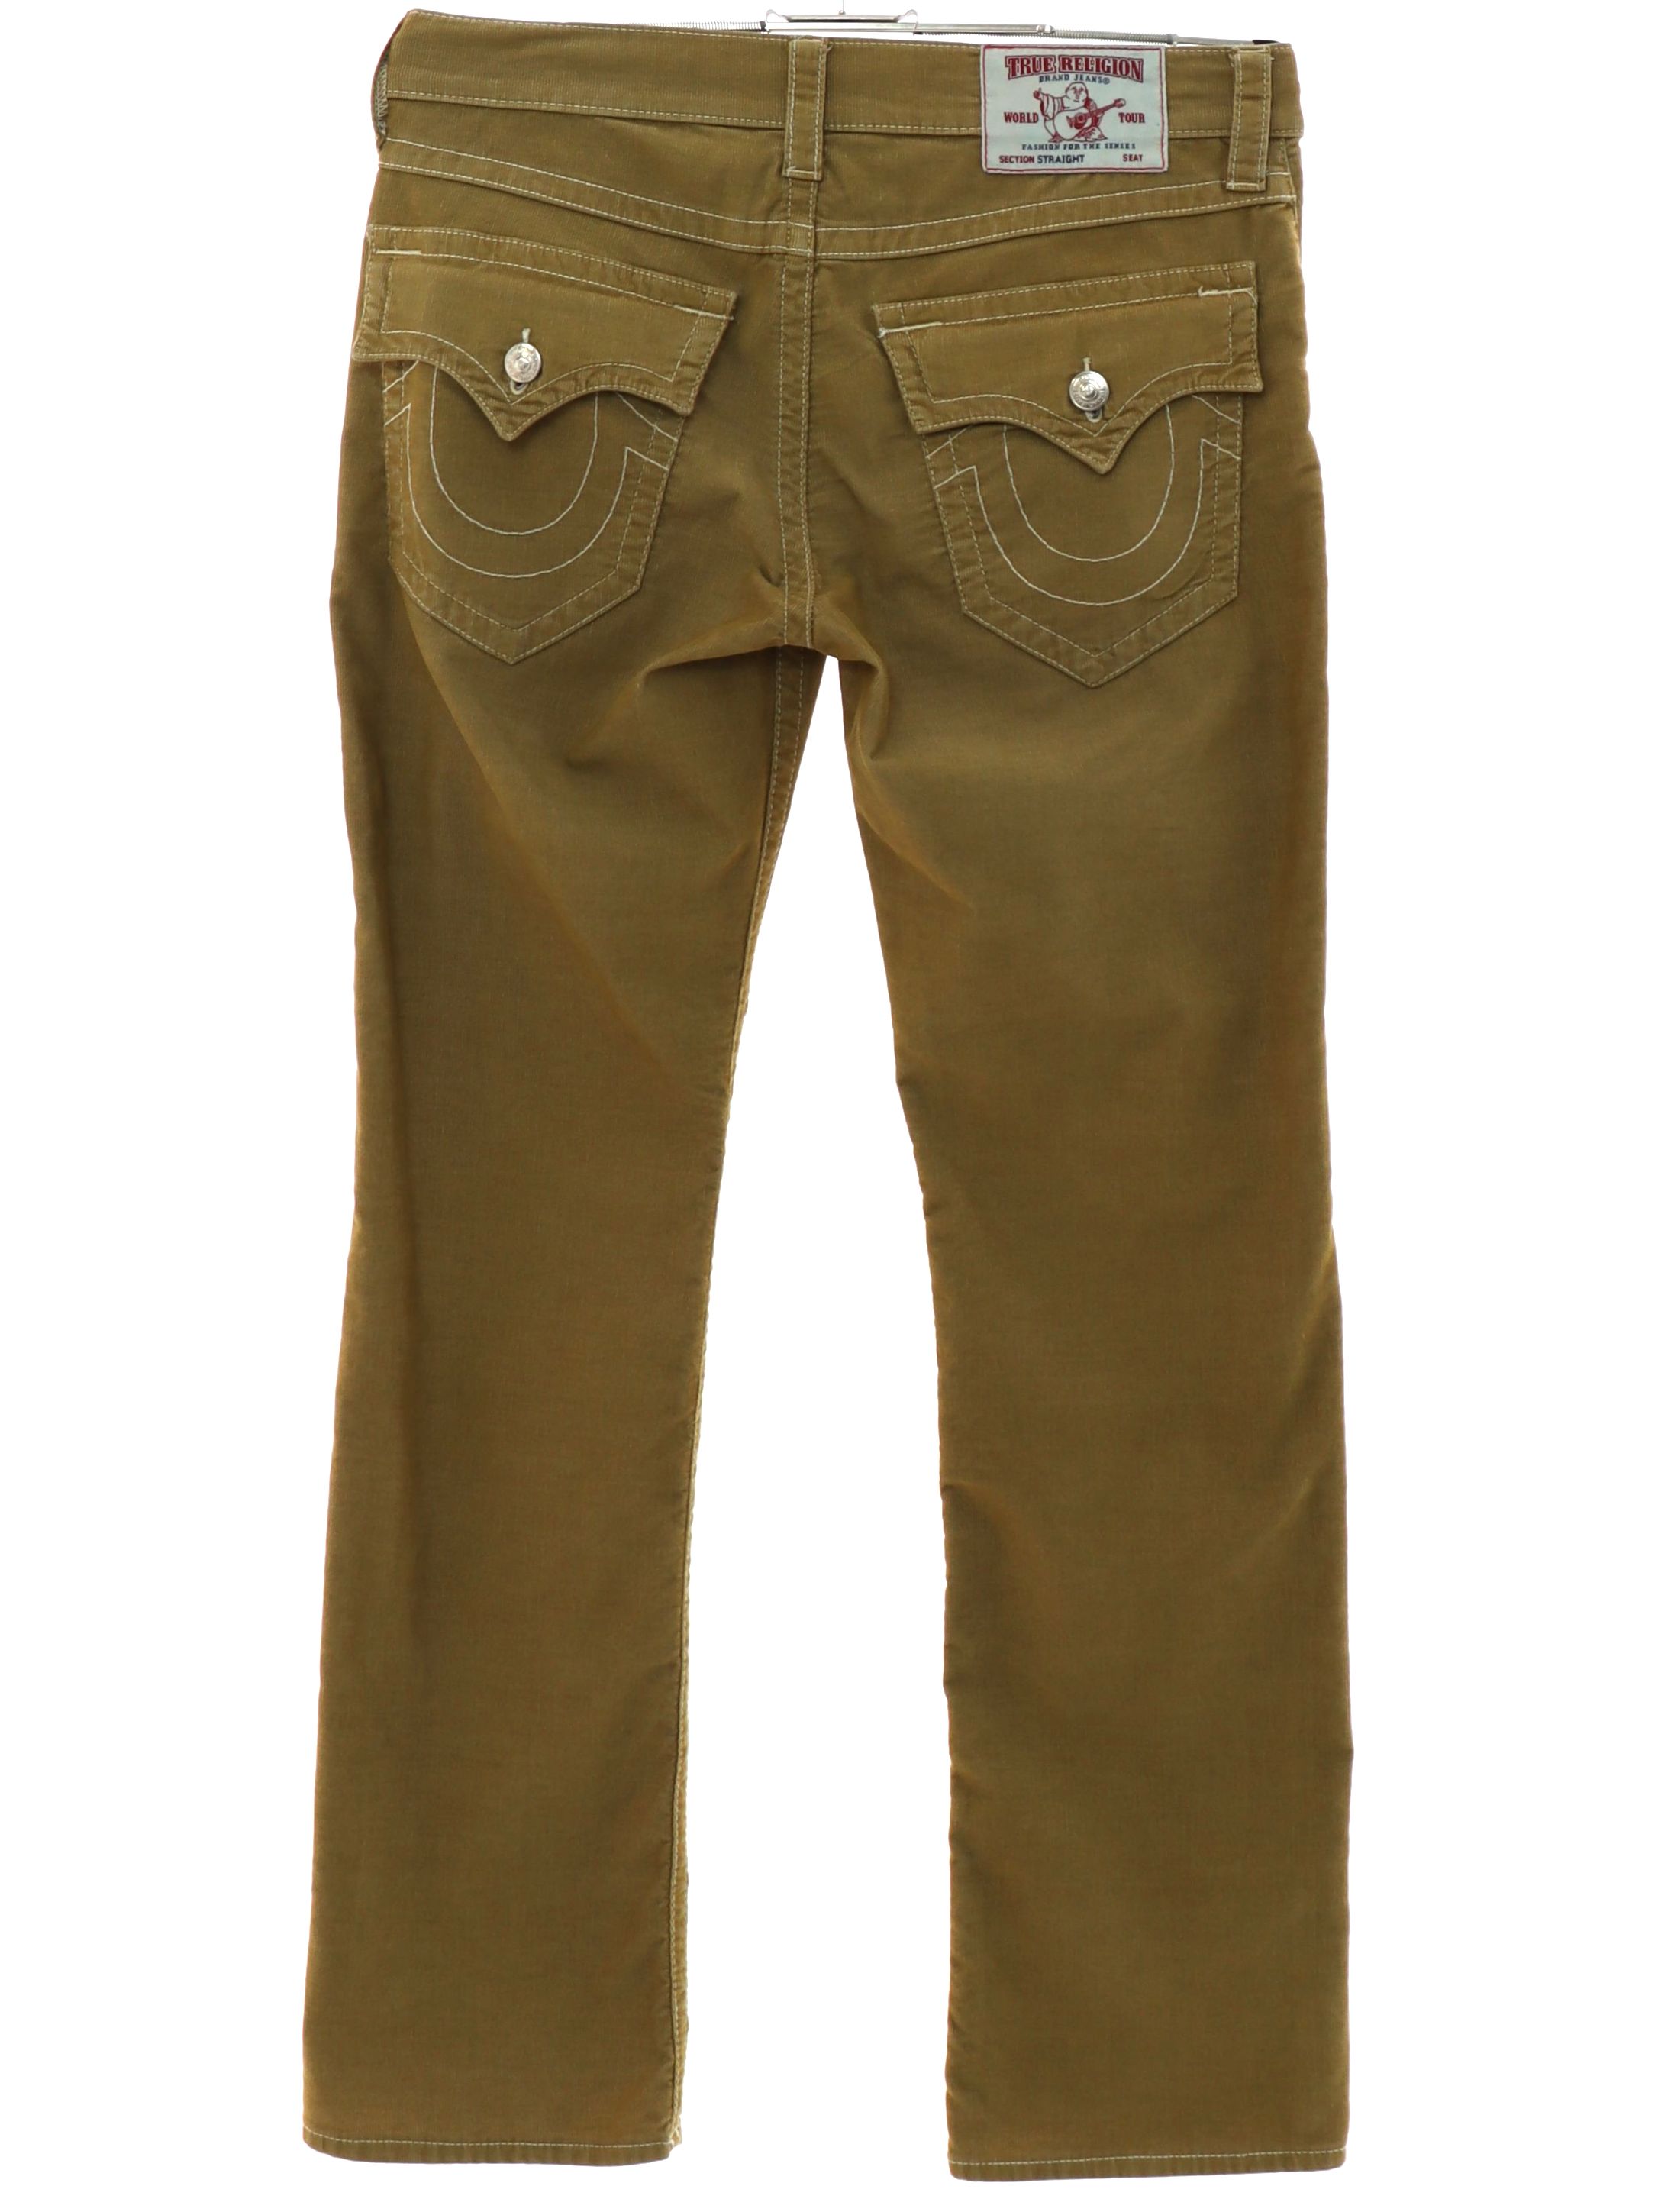 True Religion Corduroy Pants - Pants & Jumpsuits